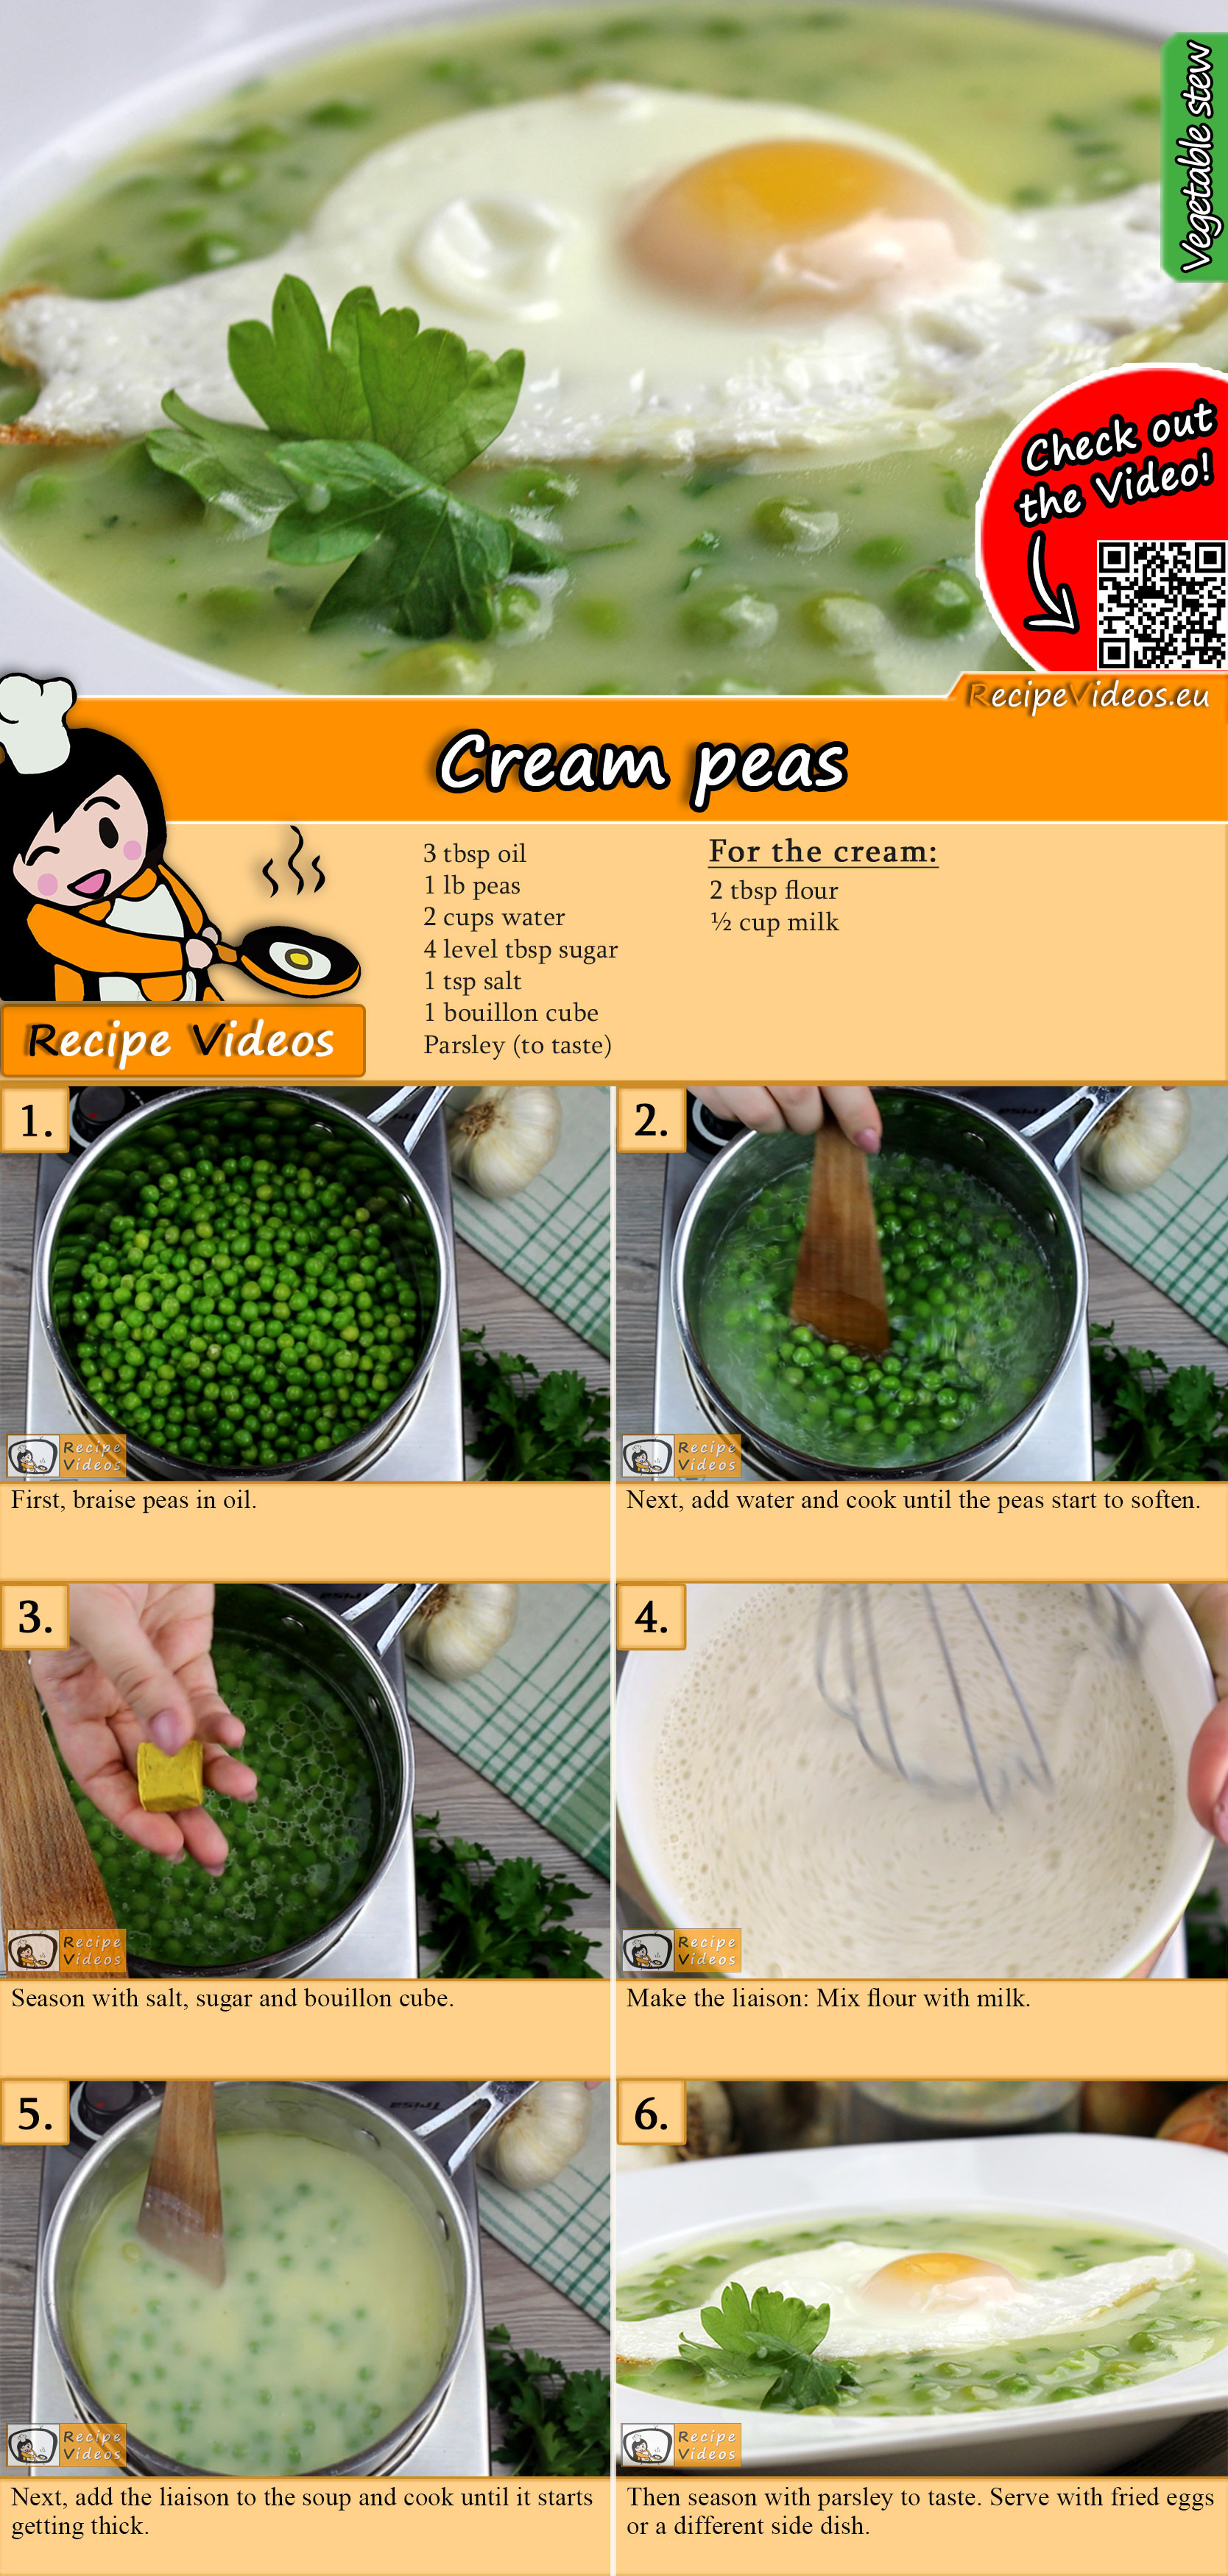 Cream peas recipe with video